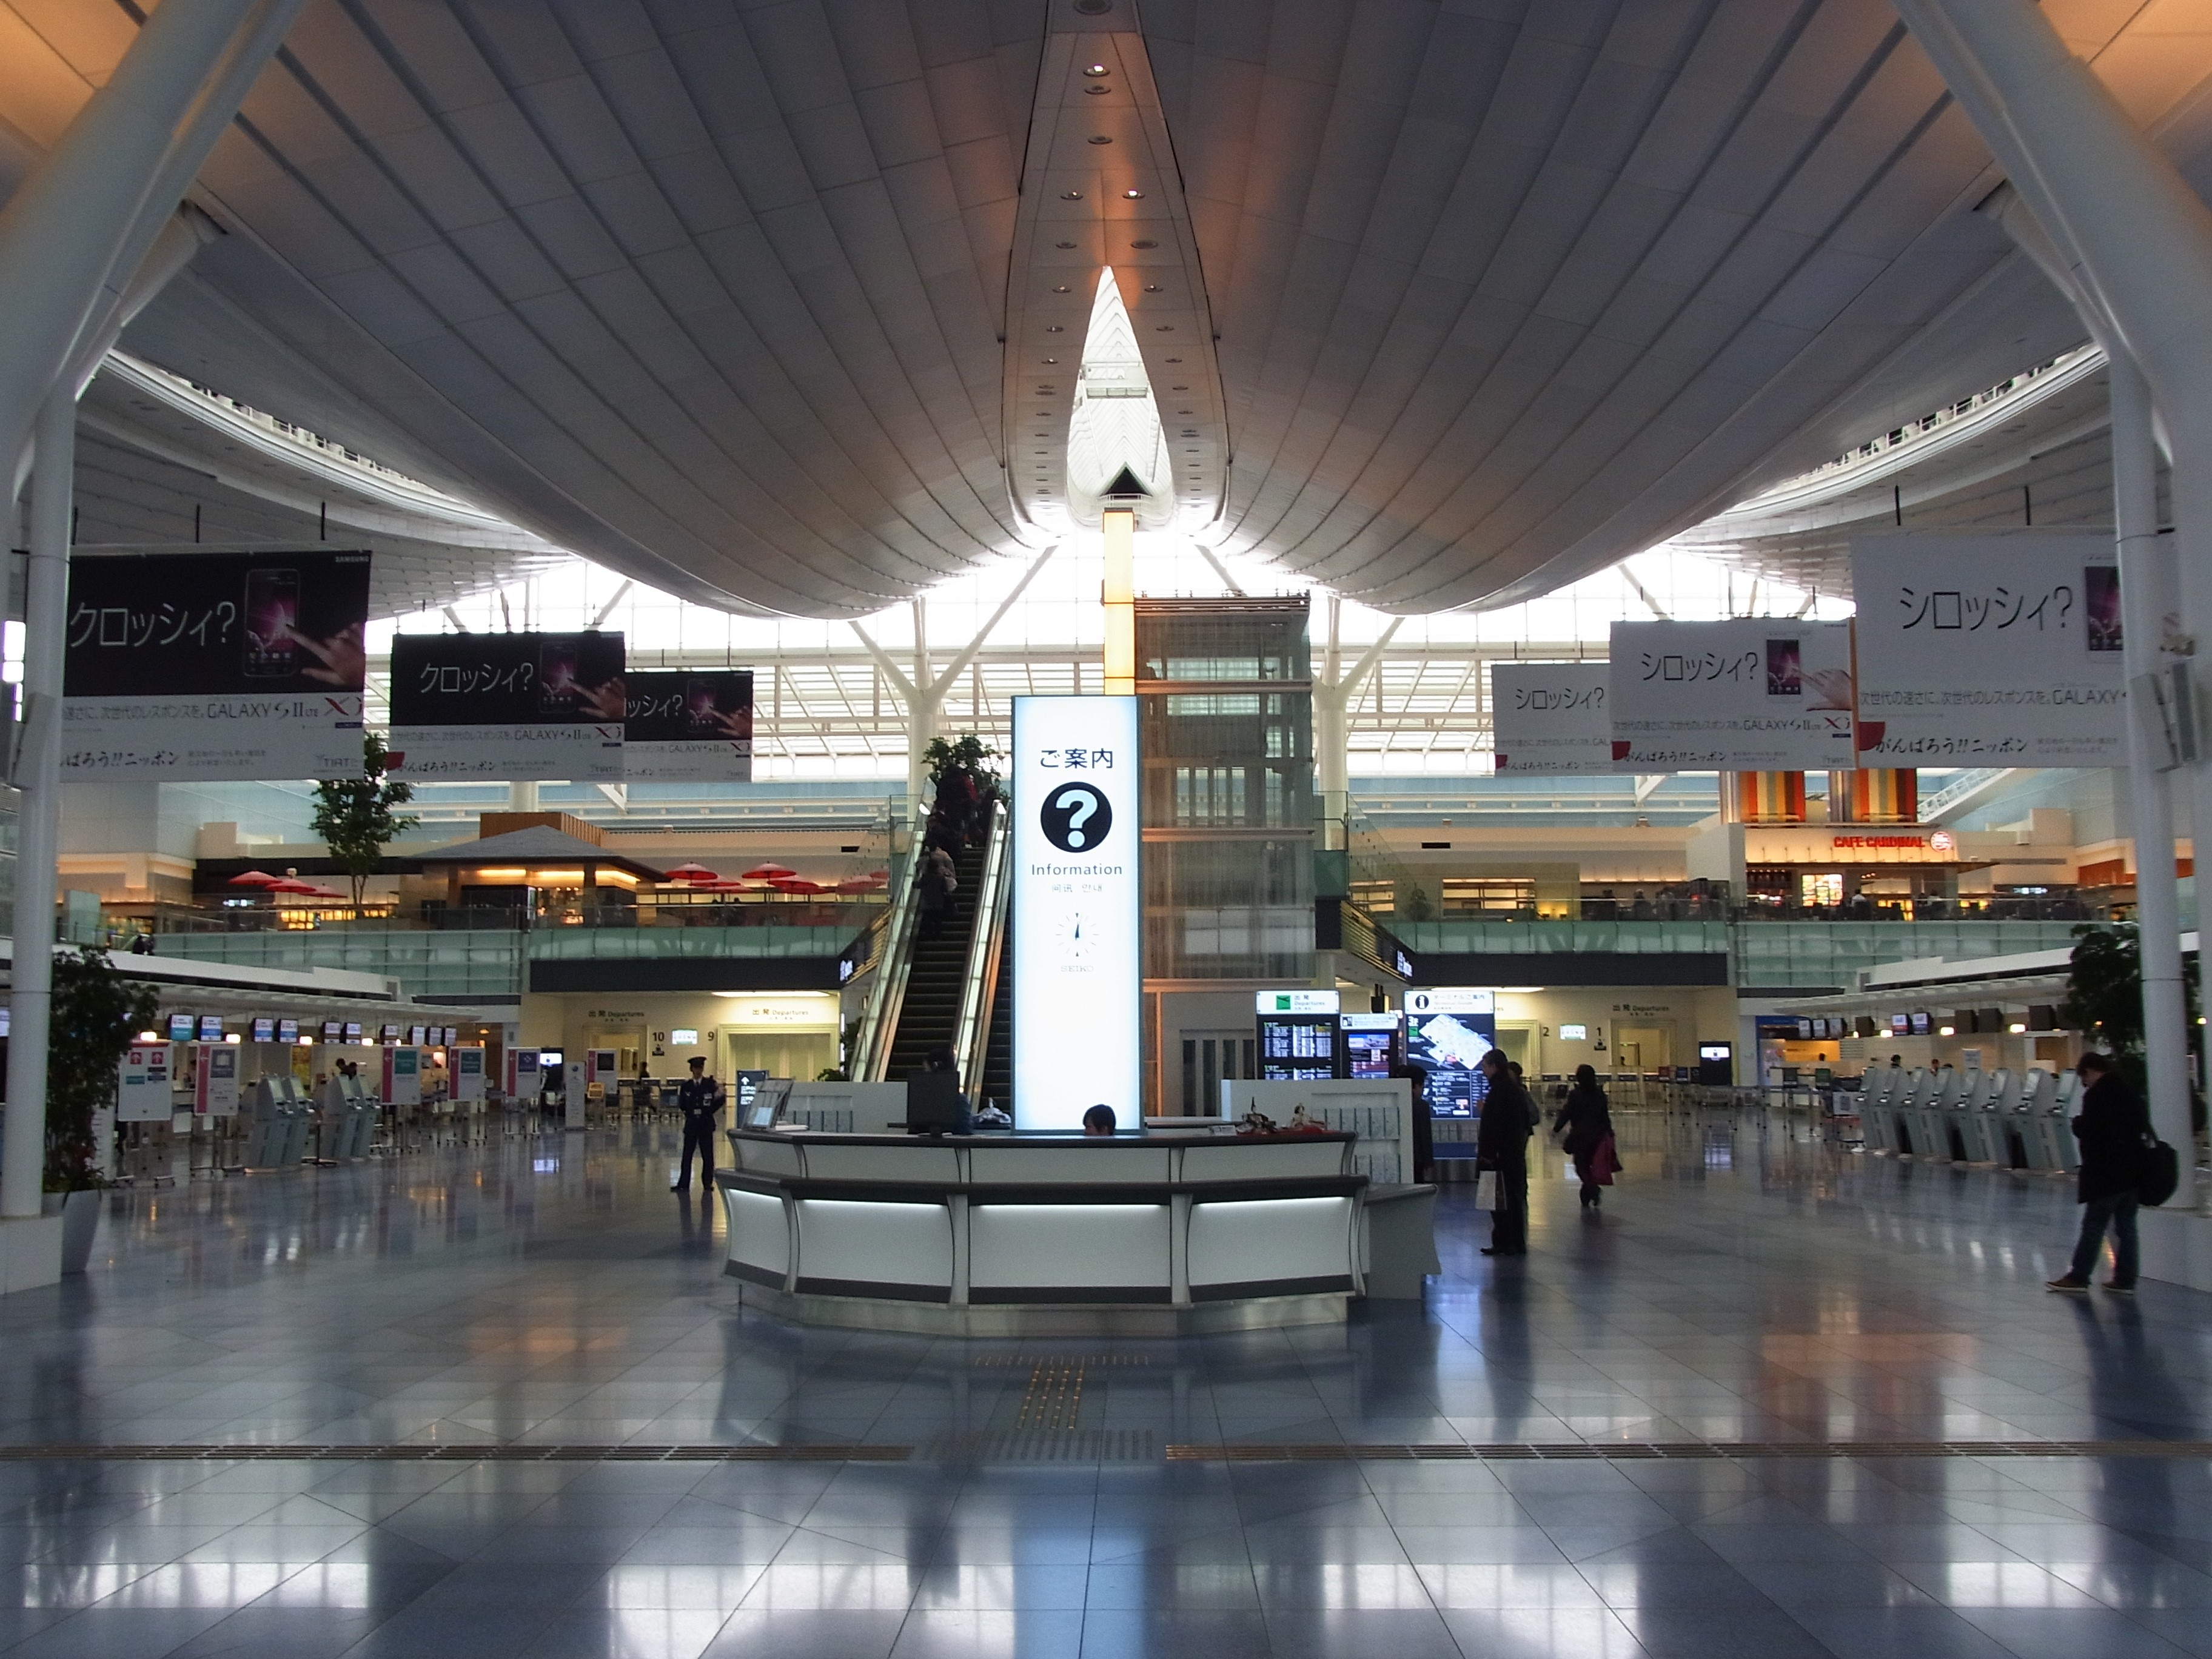 日本国内でSIMカードを購入できる場所 1. 空港販売カウンター